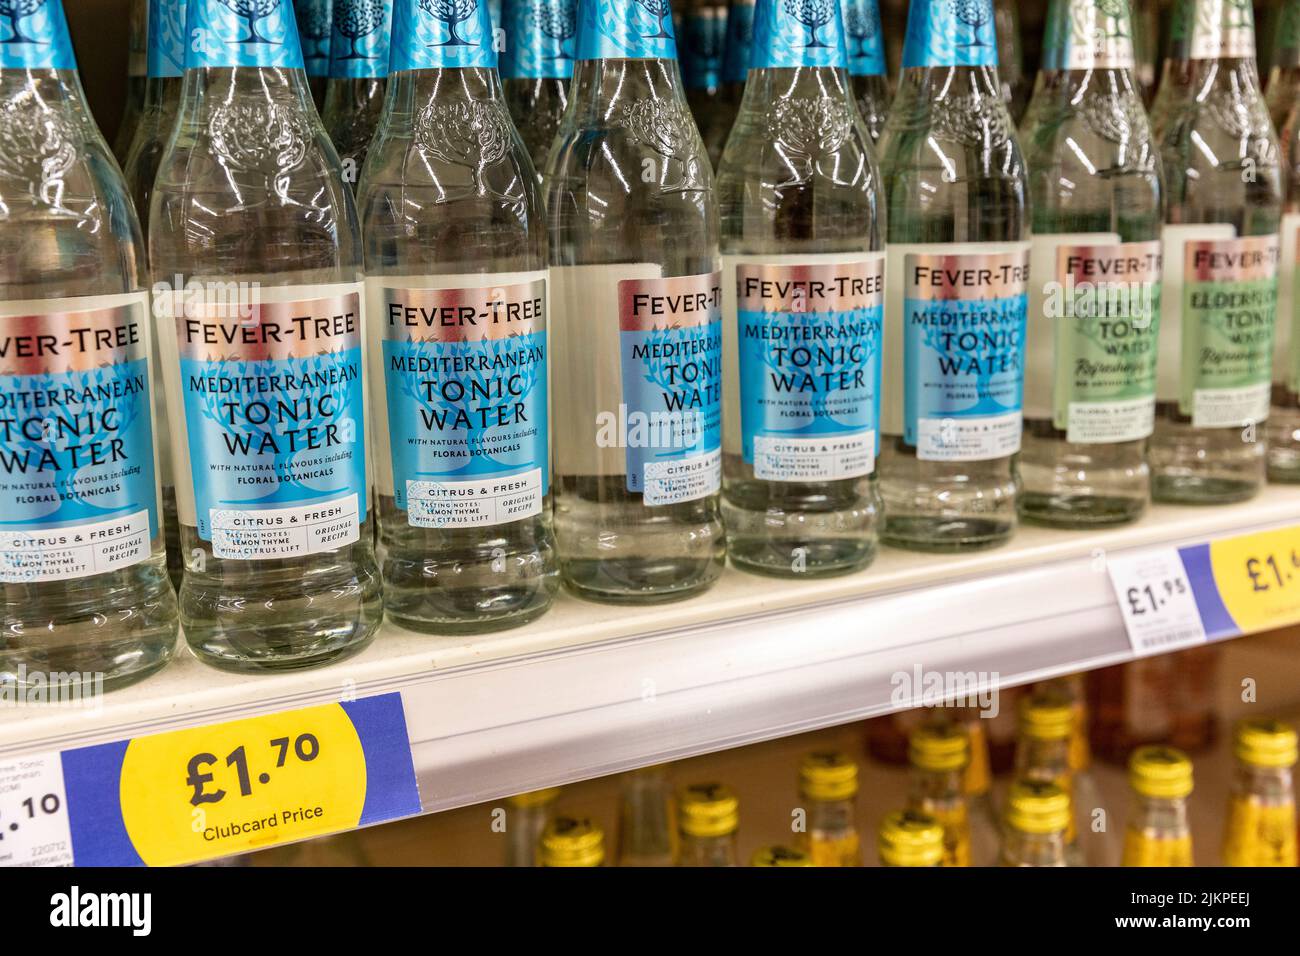 Fevertree tonic Waters in vendita in un supermercato Tesco offerto in sapori mediterranei e fiori di sambuco, Inghilterra, Regno Unito, con logo tesco clubcard price Foto Stock